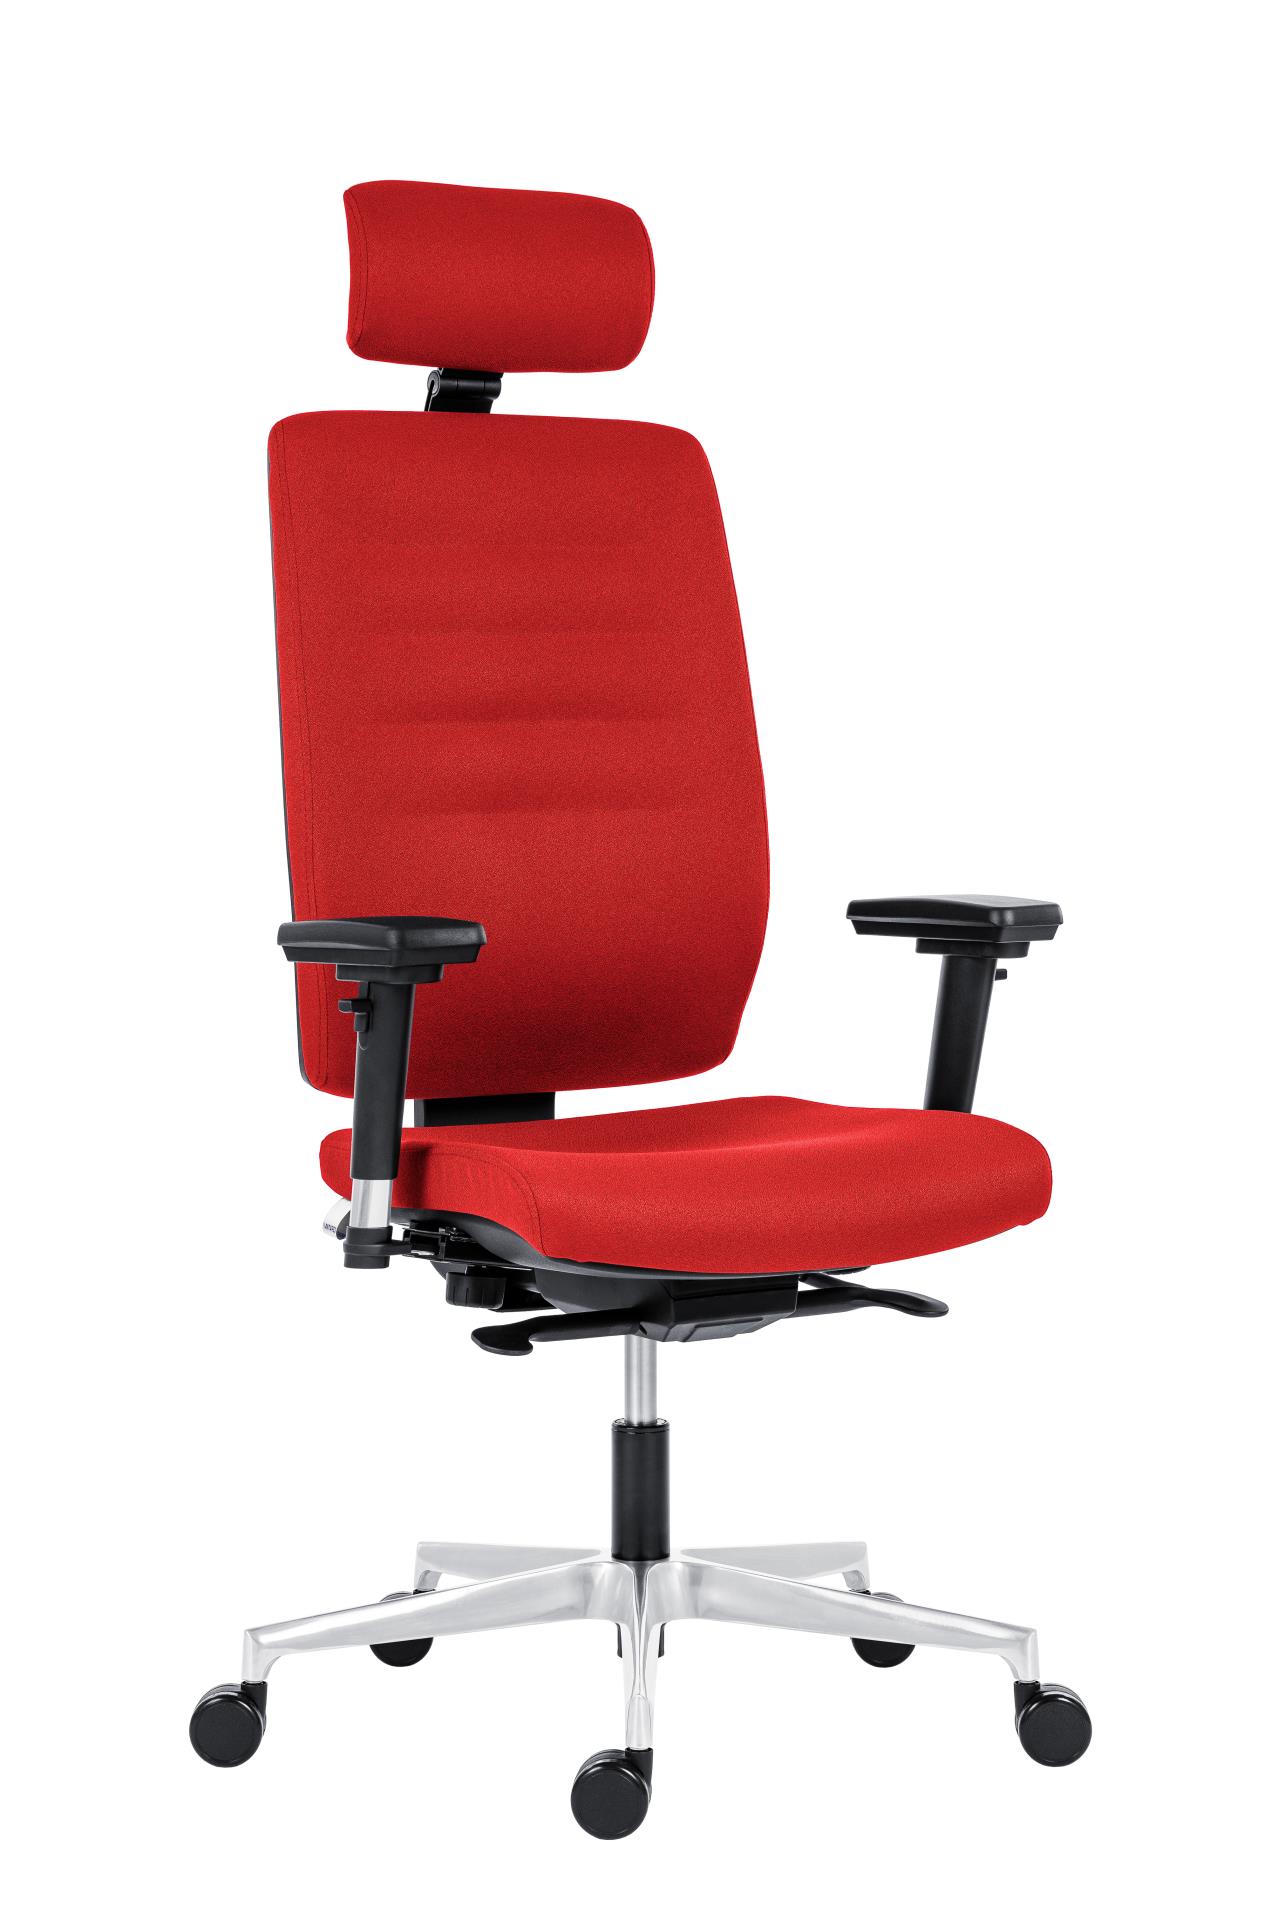 Antares Kancelářská židle Eclipse - s podhlavníkem, synchronní, červená